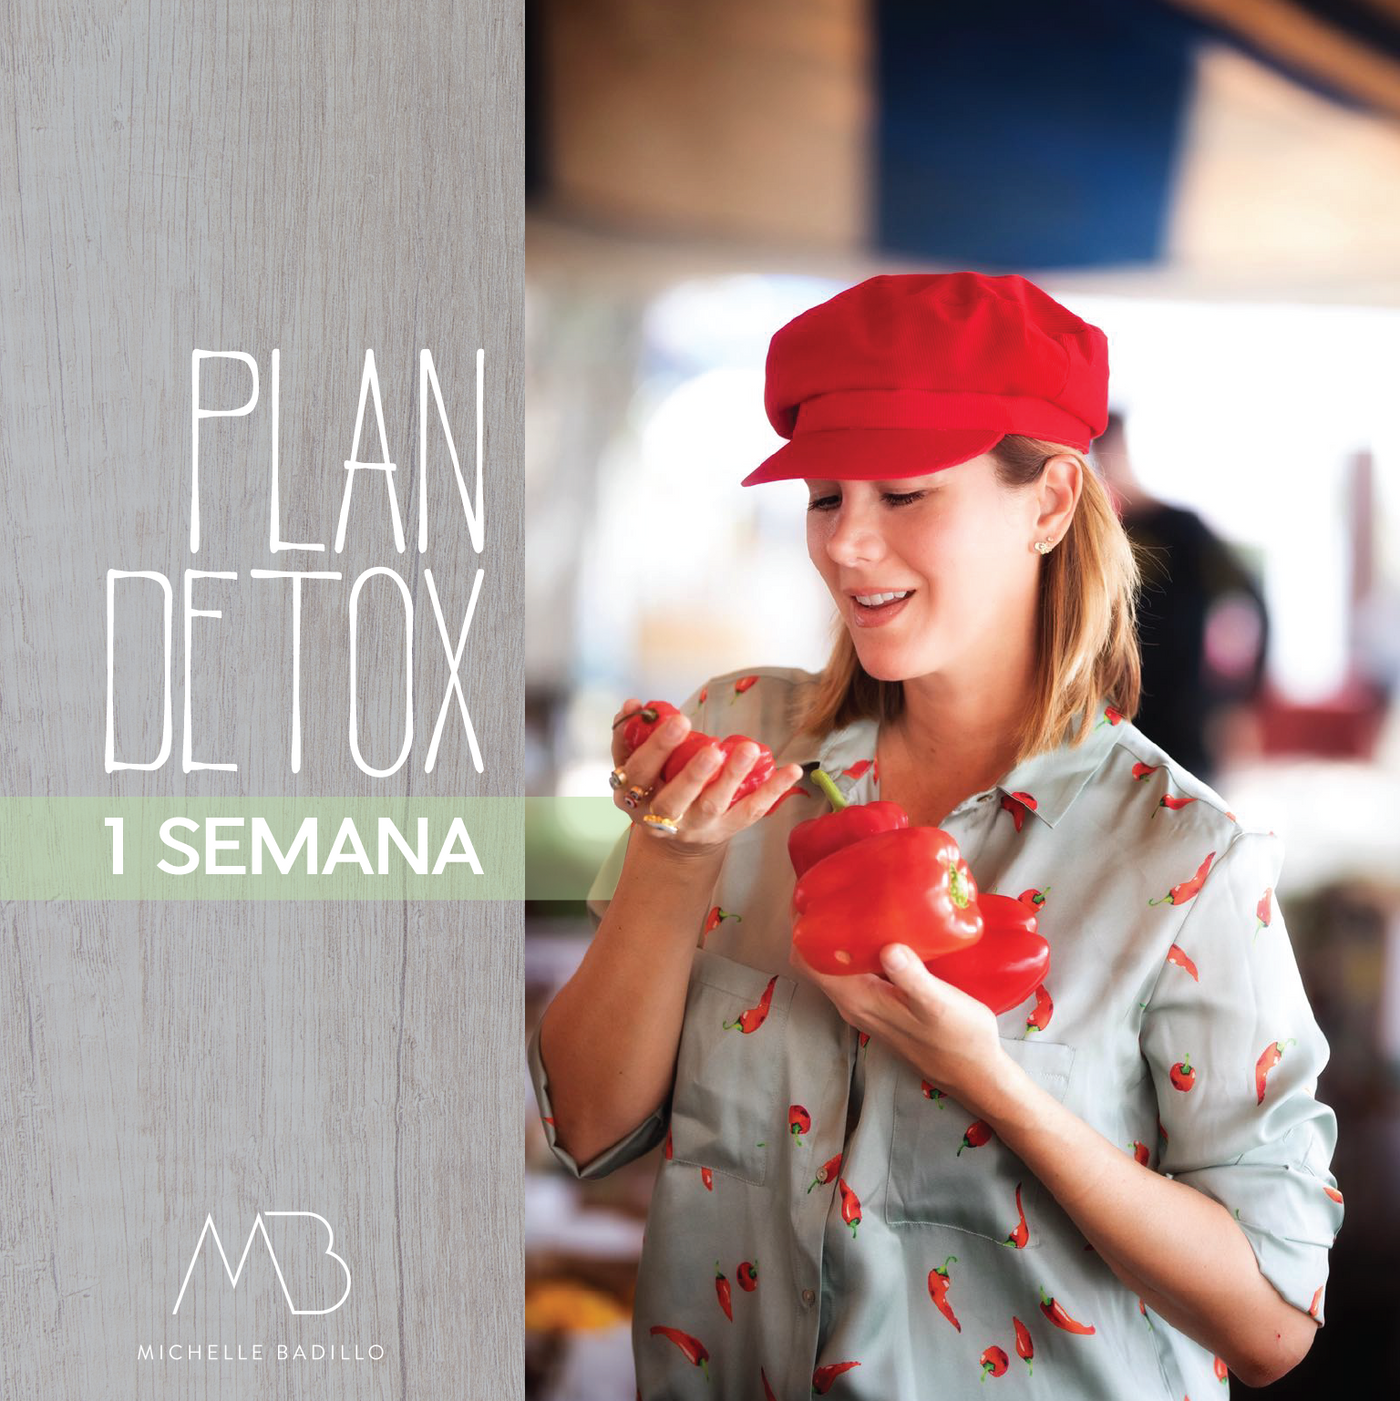 Detox Plan 1 Semana - Michelle Badillo Tienda 